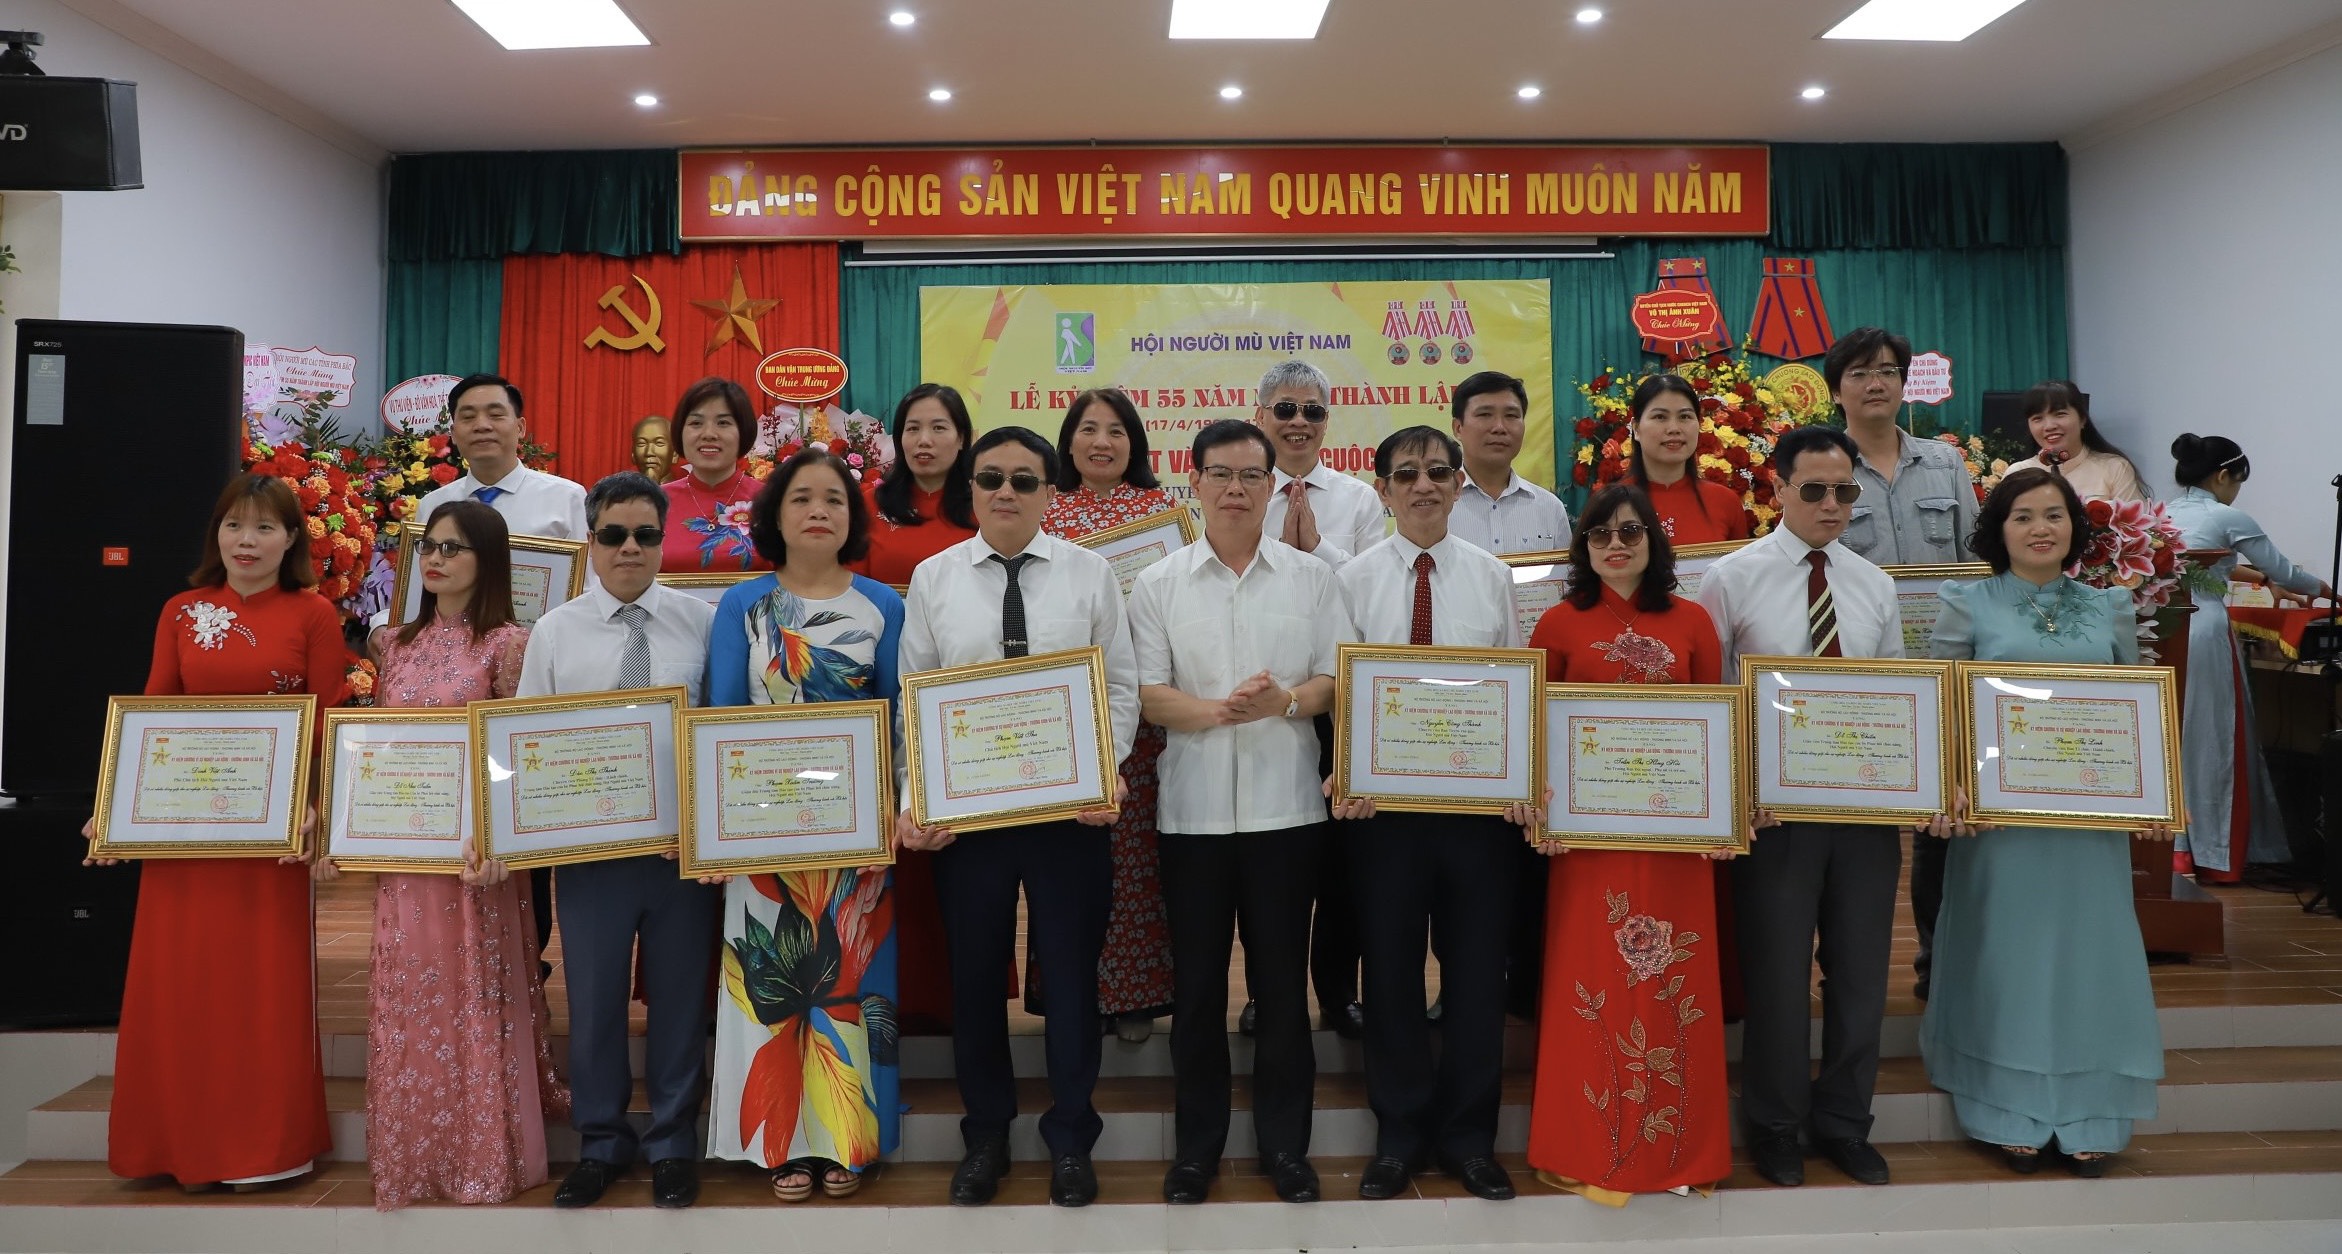 Lễ kỷ niệm 55 năm ngày thành lập Hội Người mù Việt Nam